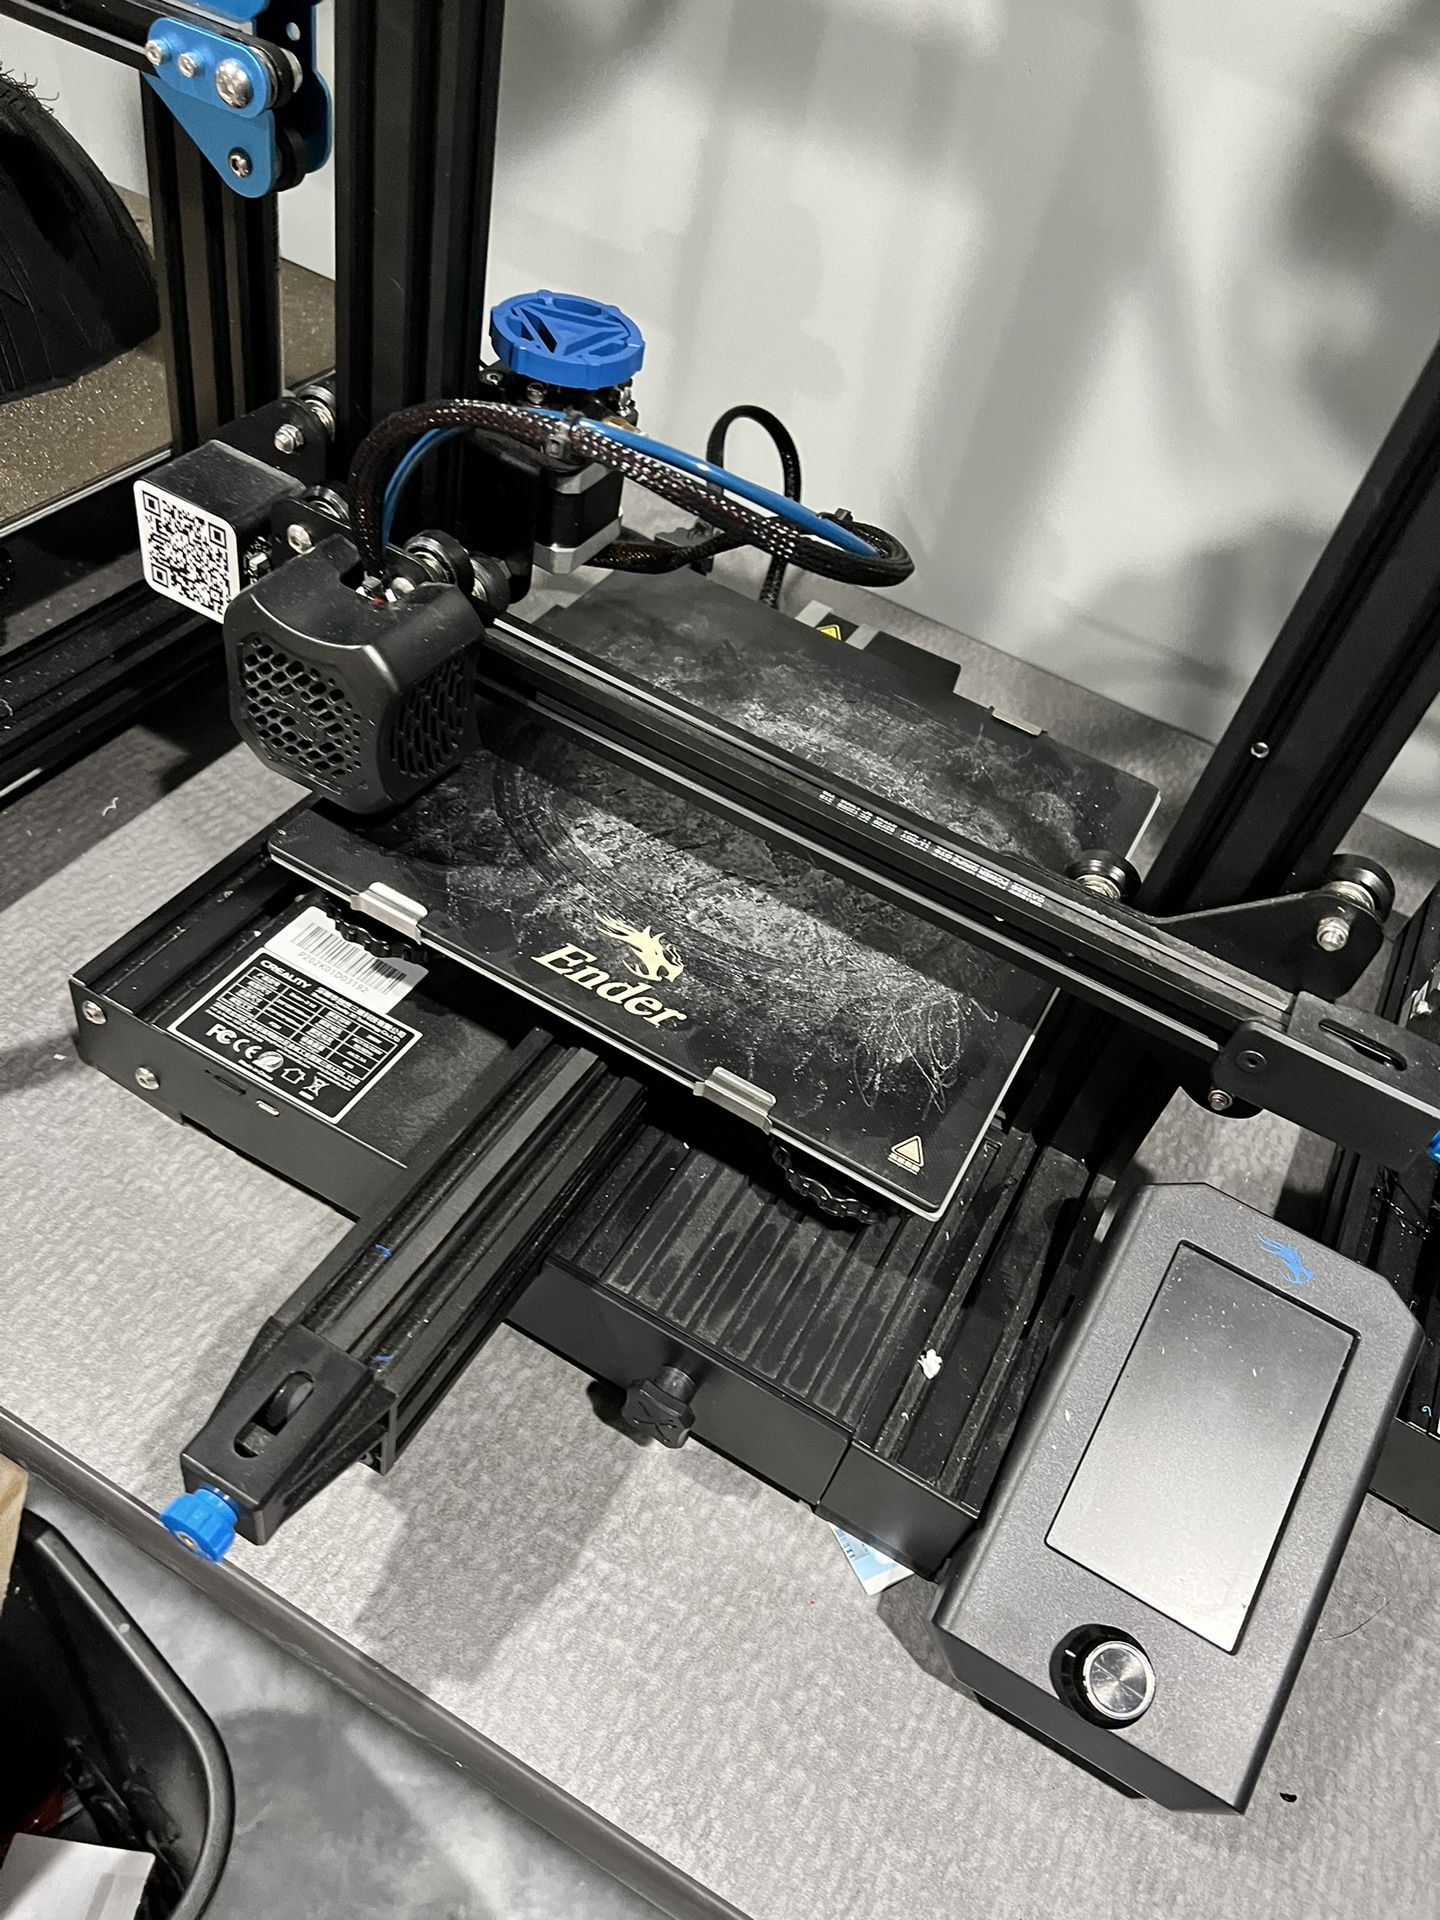 3d Printer Ender 3 V2 